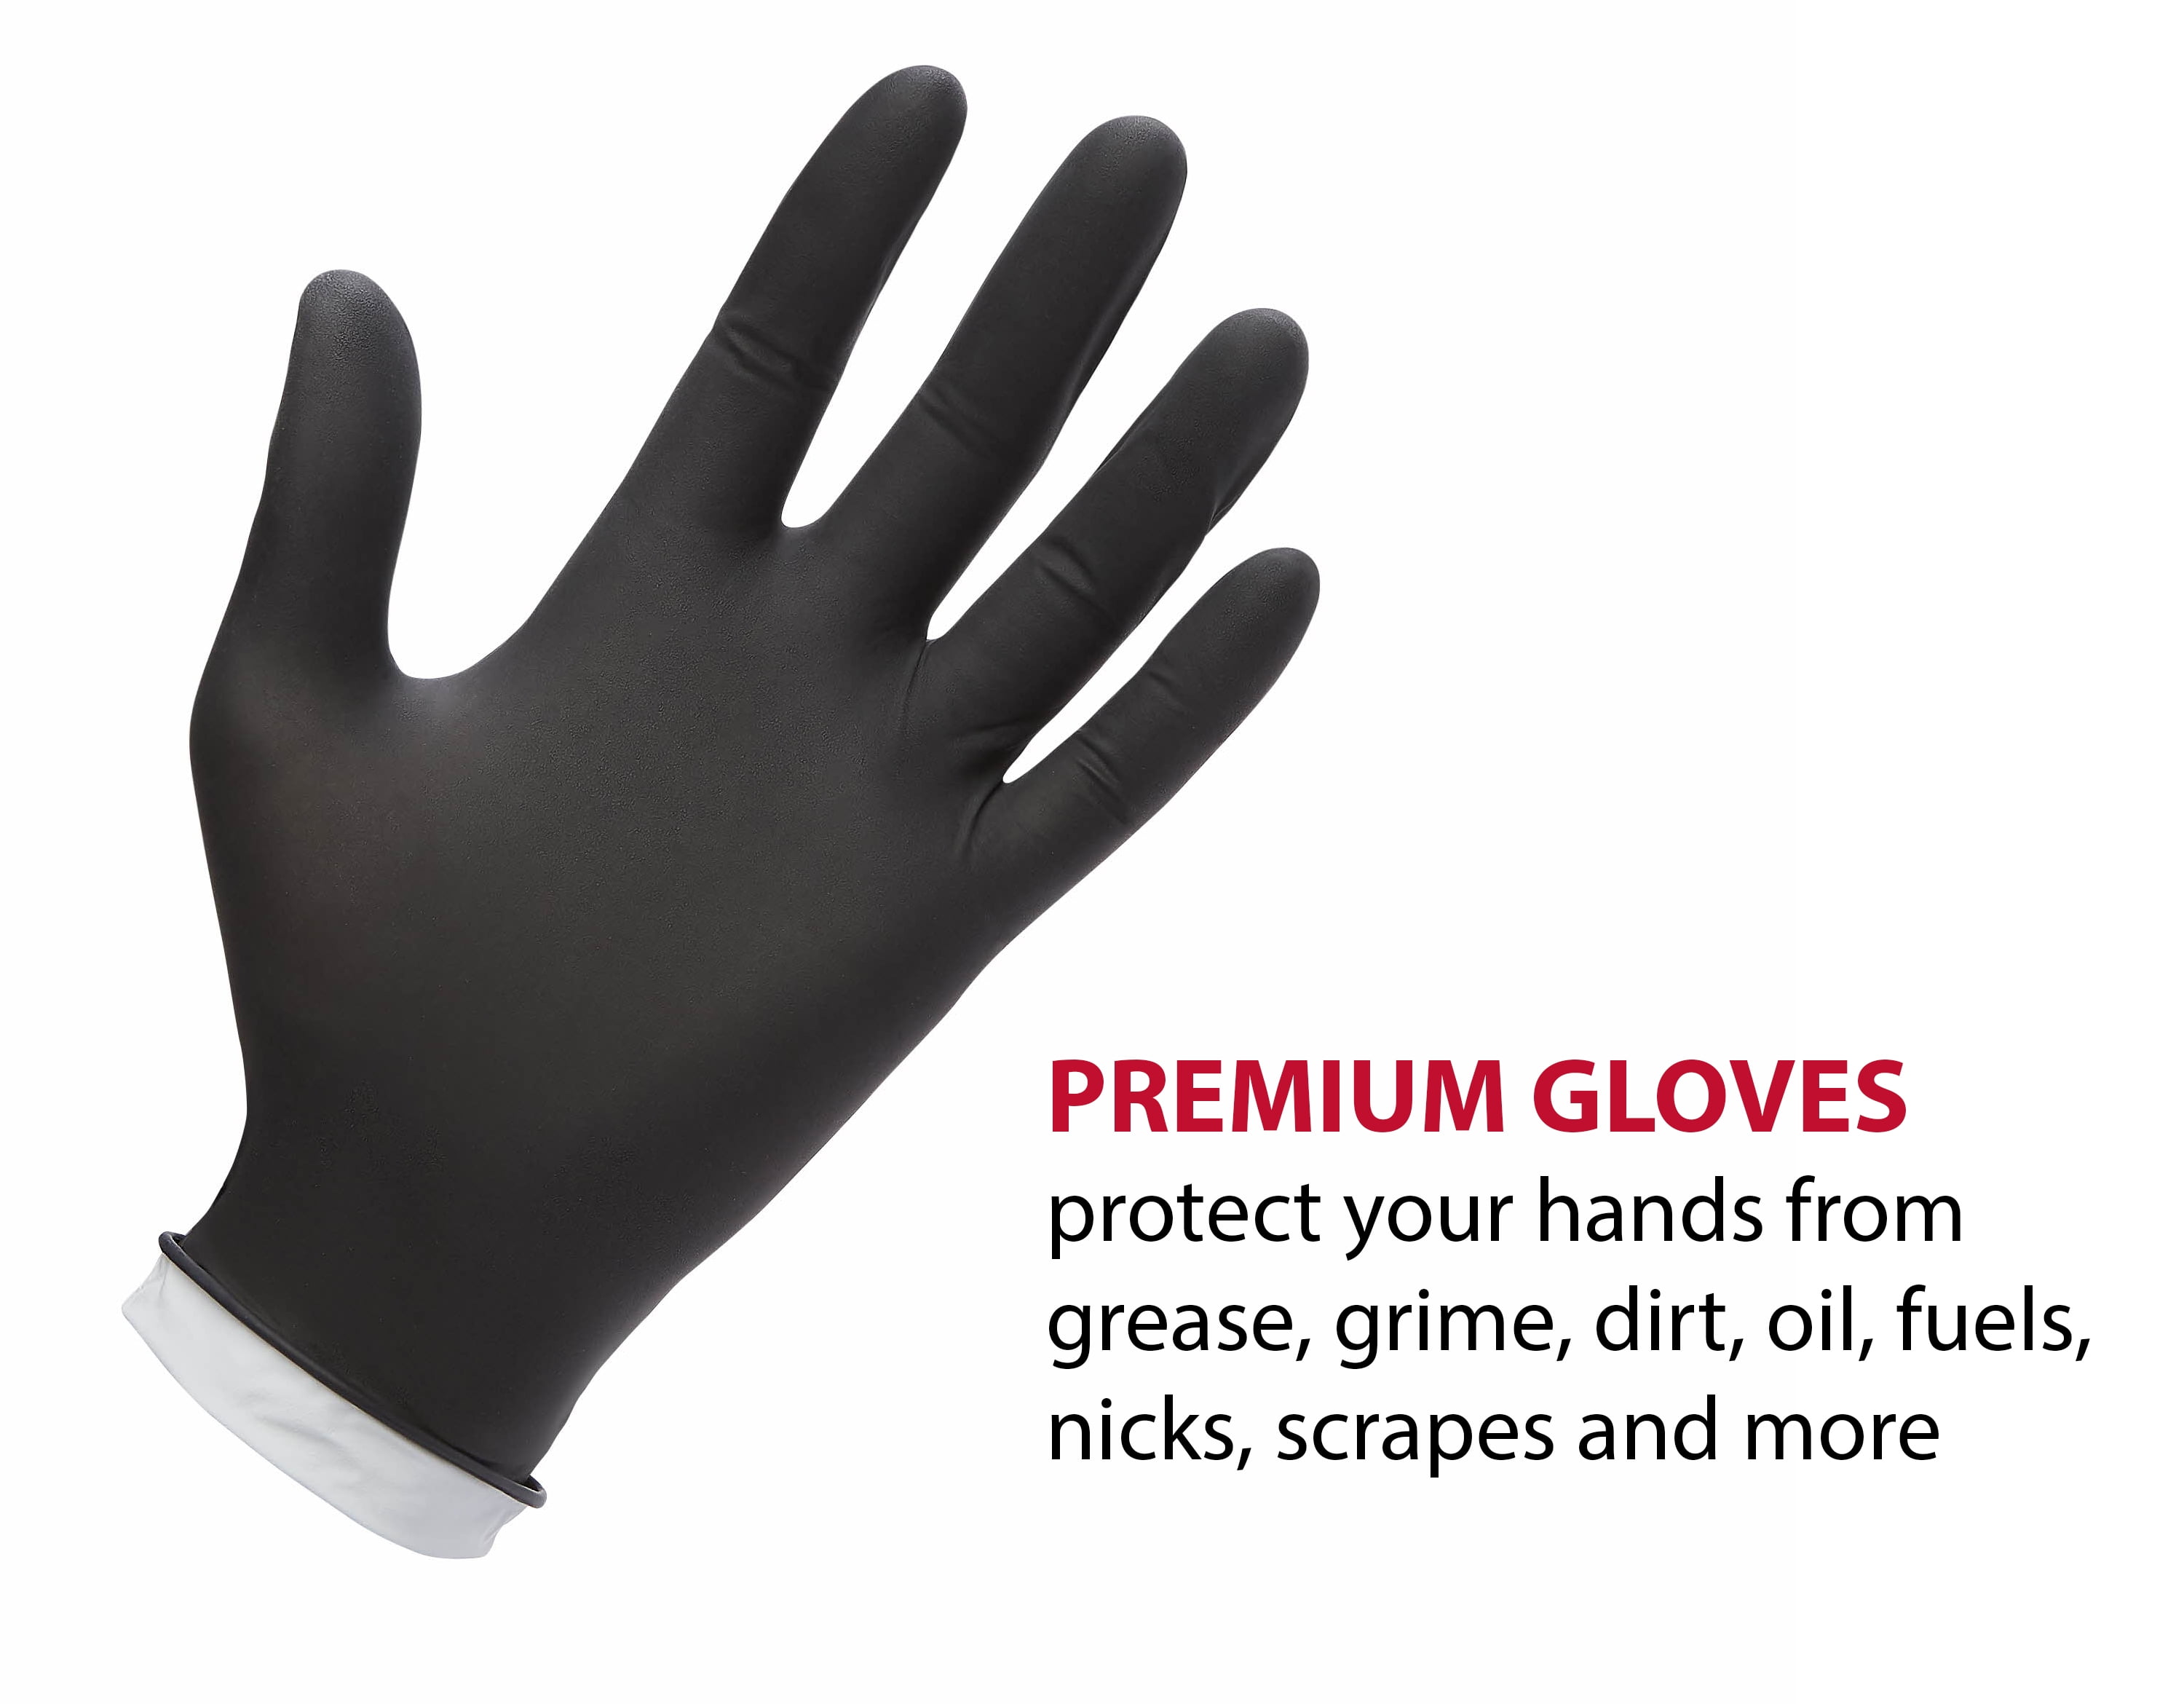 Ironton Nitrile-Coated Work Gloves, 12 Pairs, Black, Large, Model